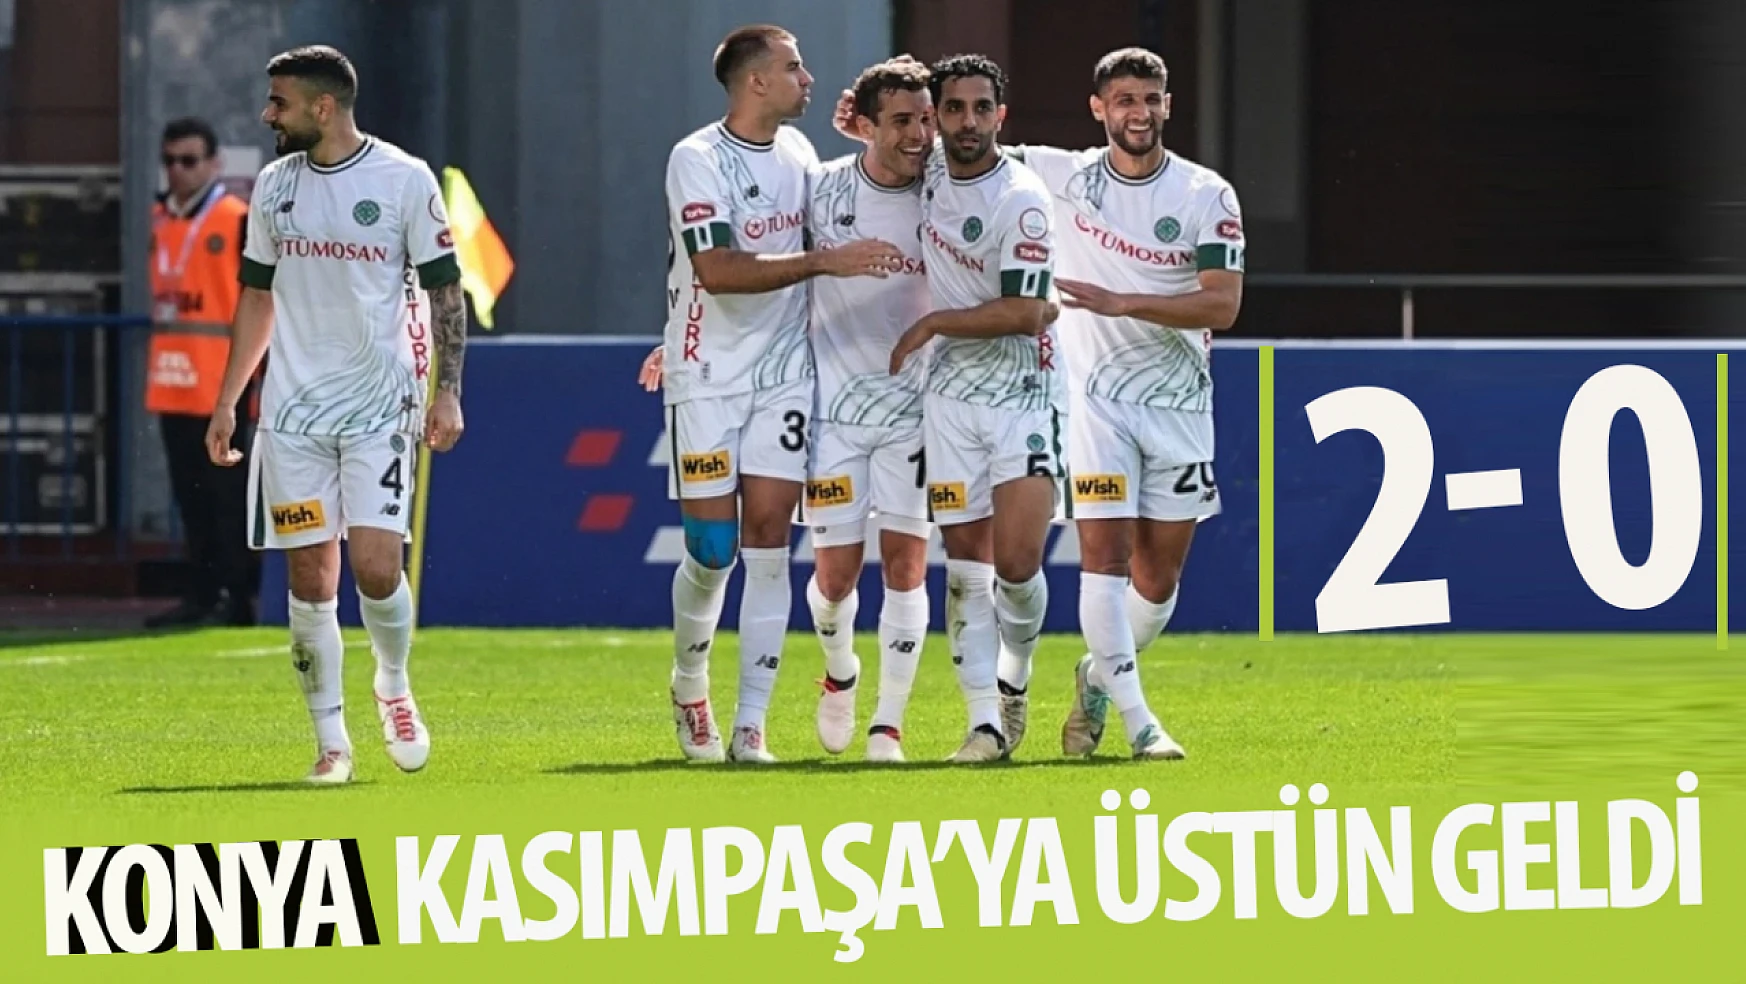 Konyaspor, Kasımpaşa'yı 2-0 mağlup etti